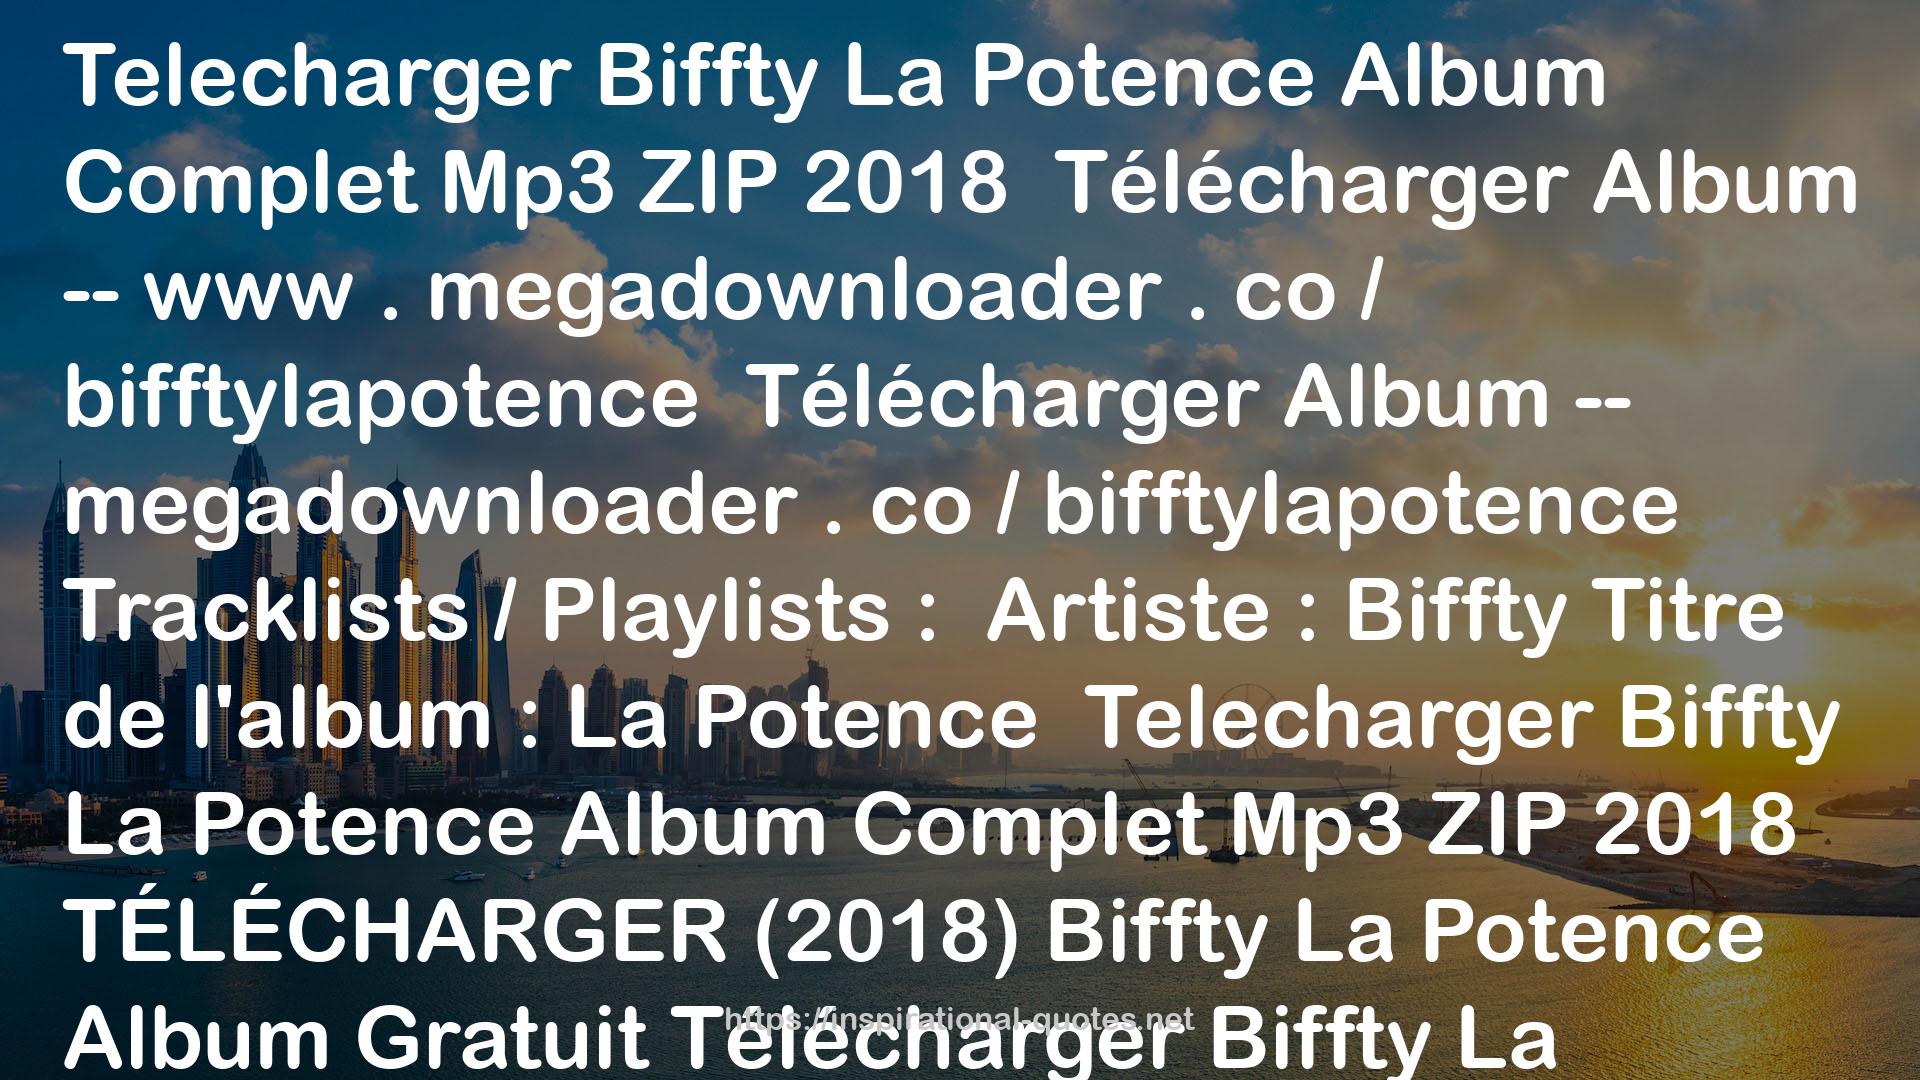 Biffty album la potence QUOTES